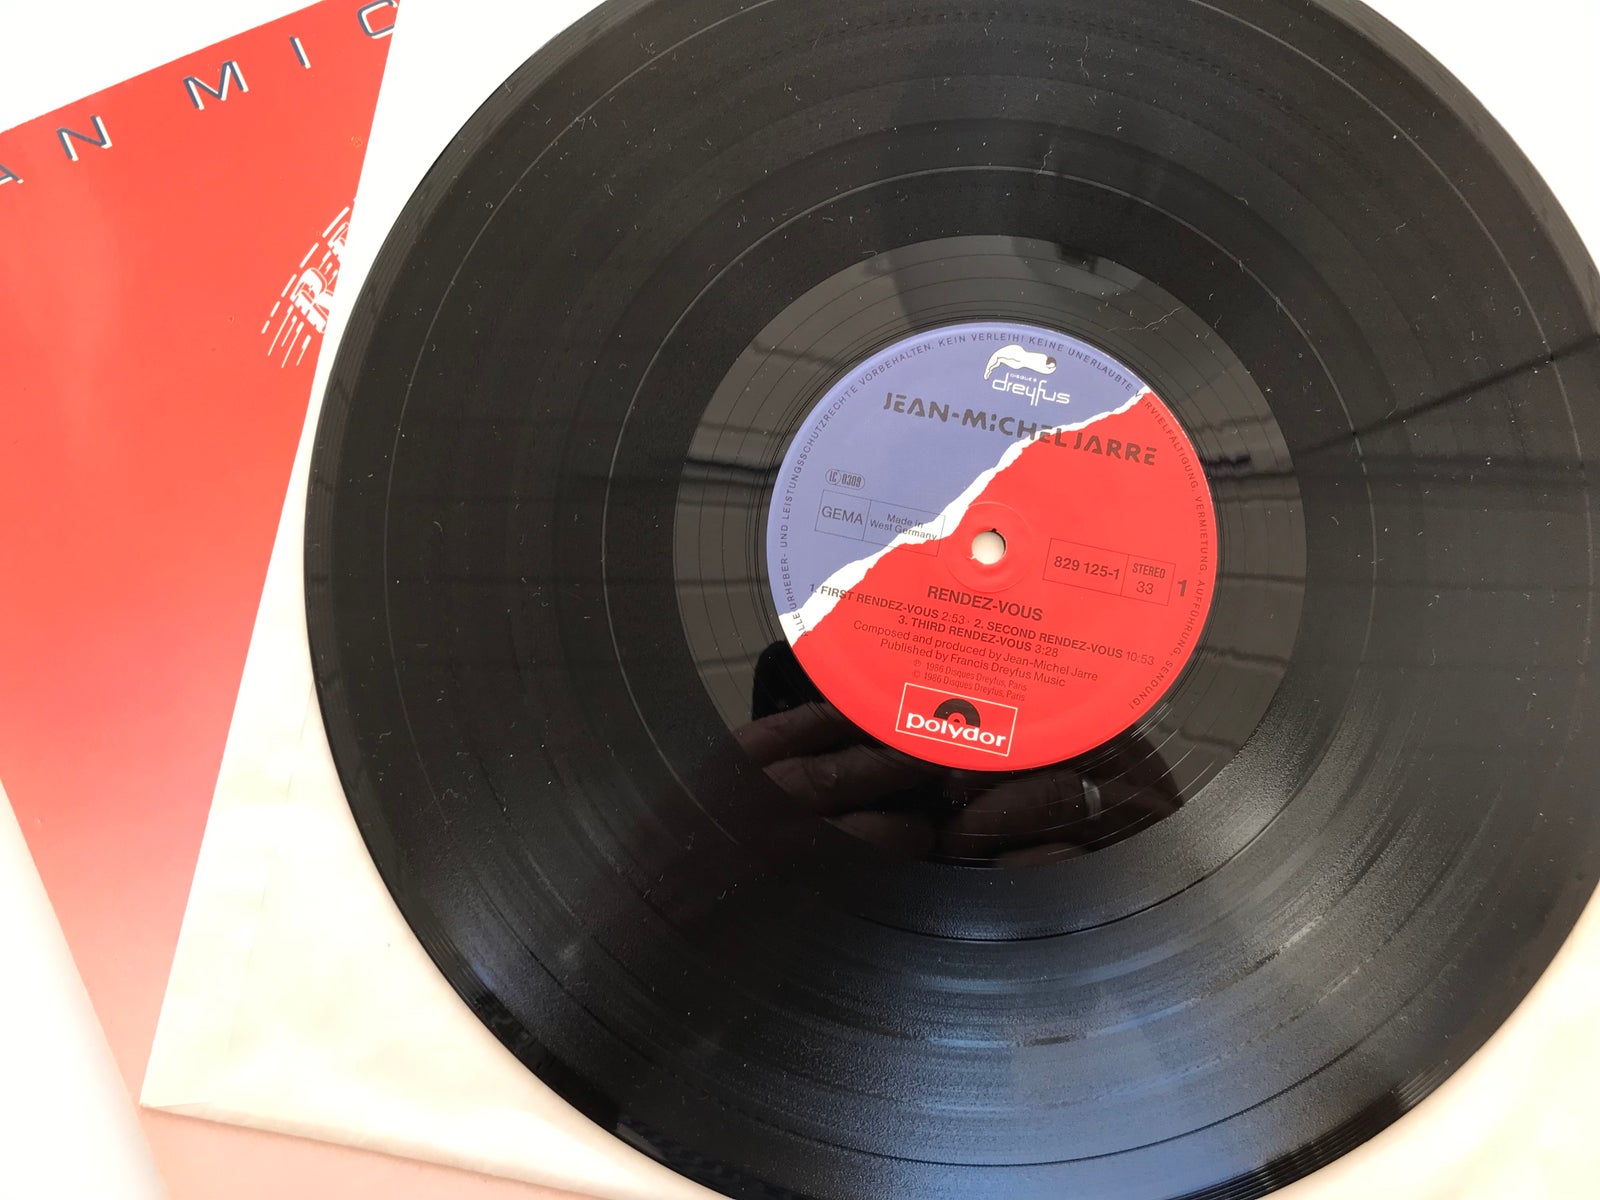 Rendez-vous 33 tours lp vinyl de Jean-Michel Jarre, 33T chez bibobu -  Ref:125973555